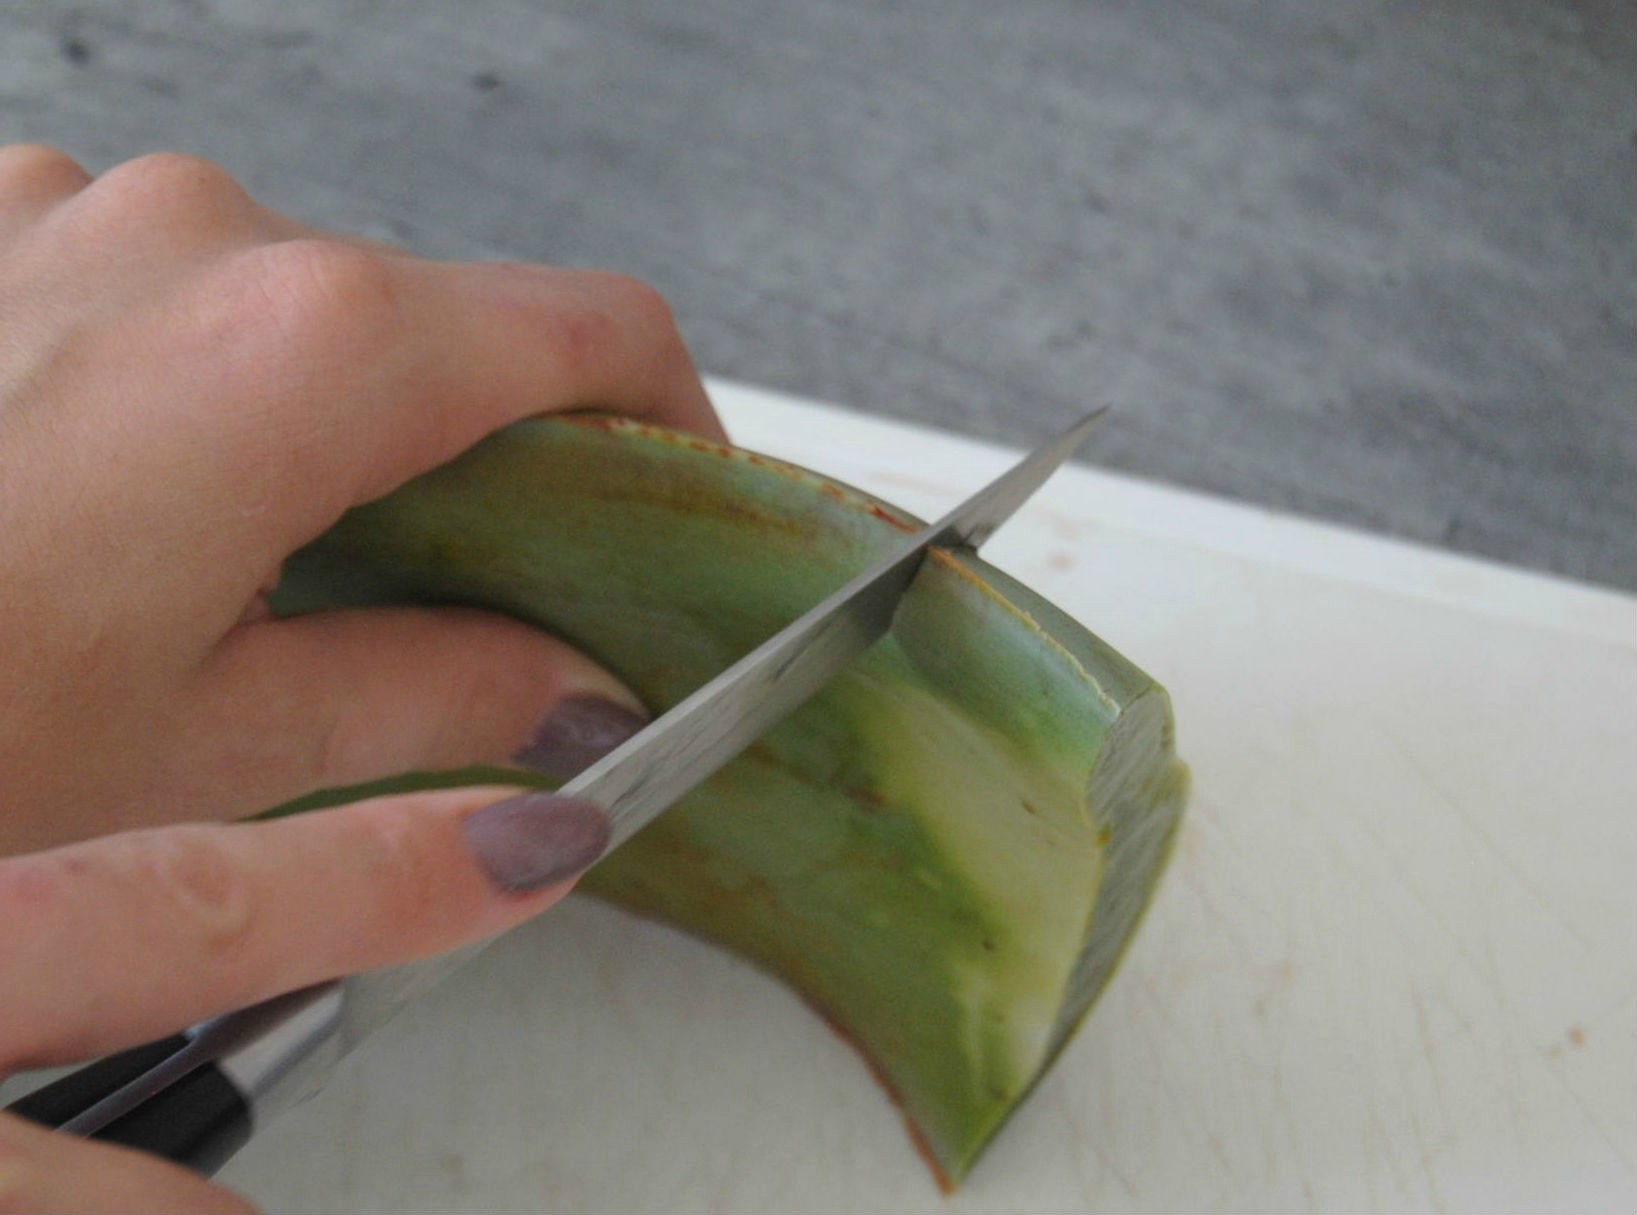 Aquí le mostramos cómo cortar y usar el gel de una hoja de aloe vera.